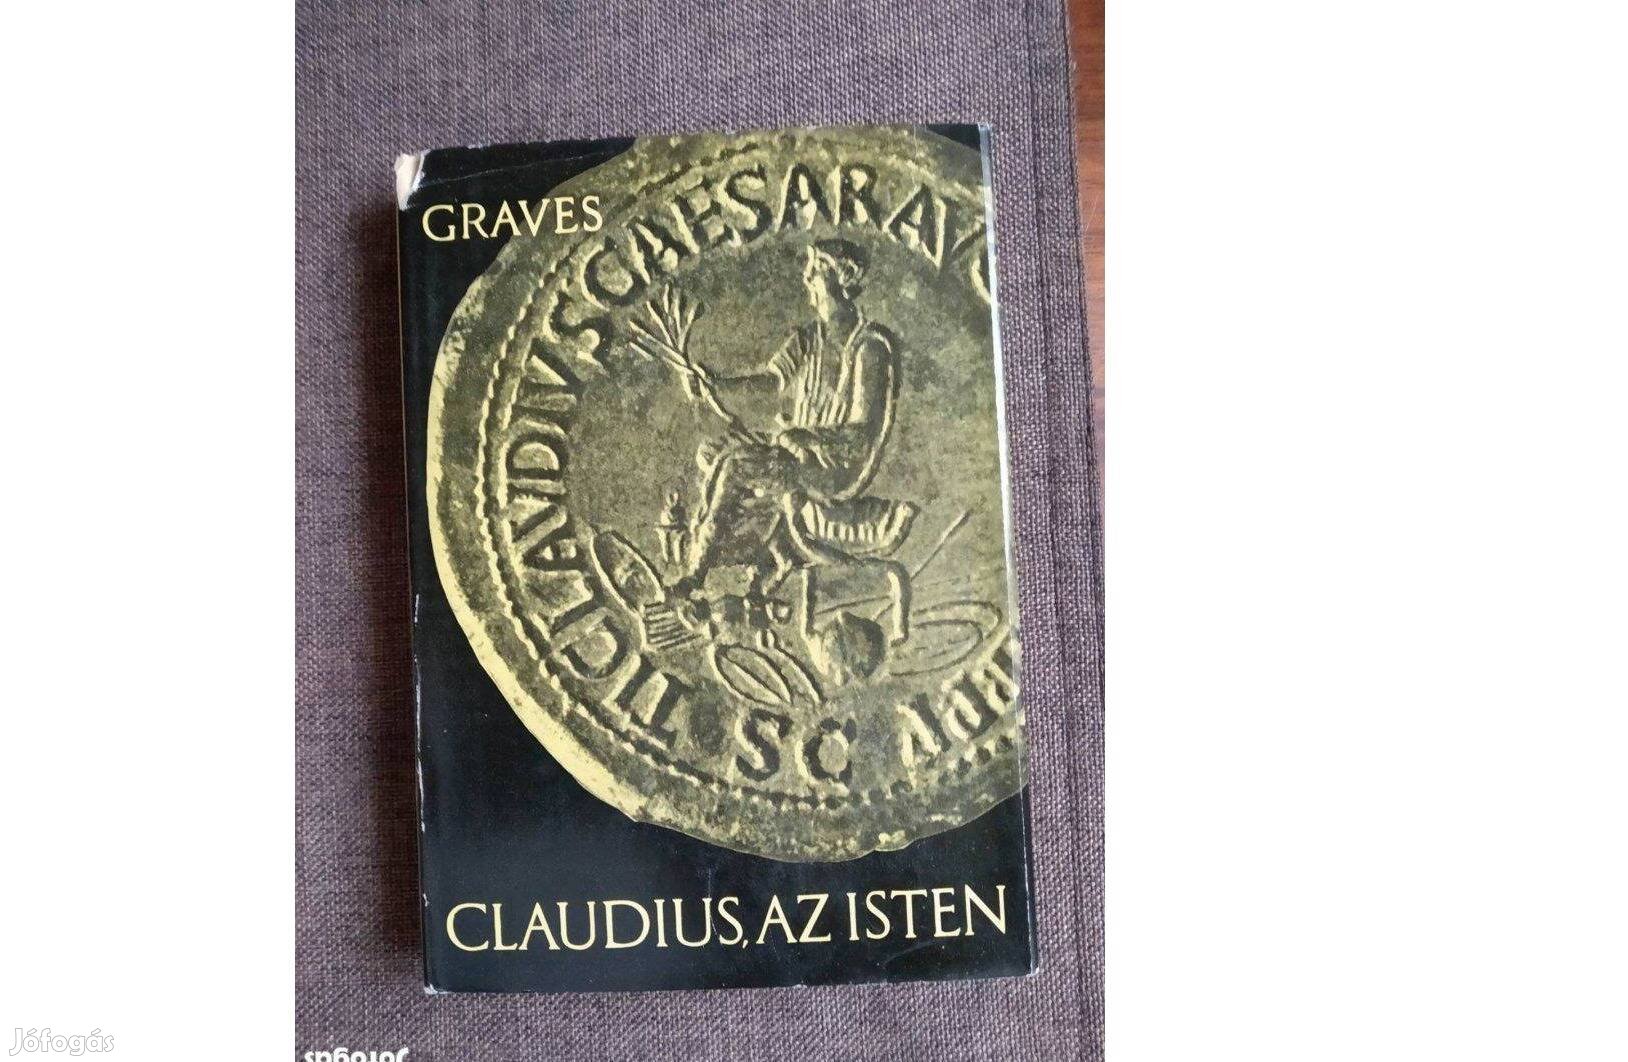 Graves Claudius az isten